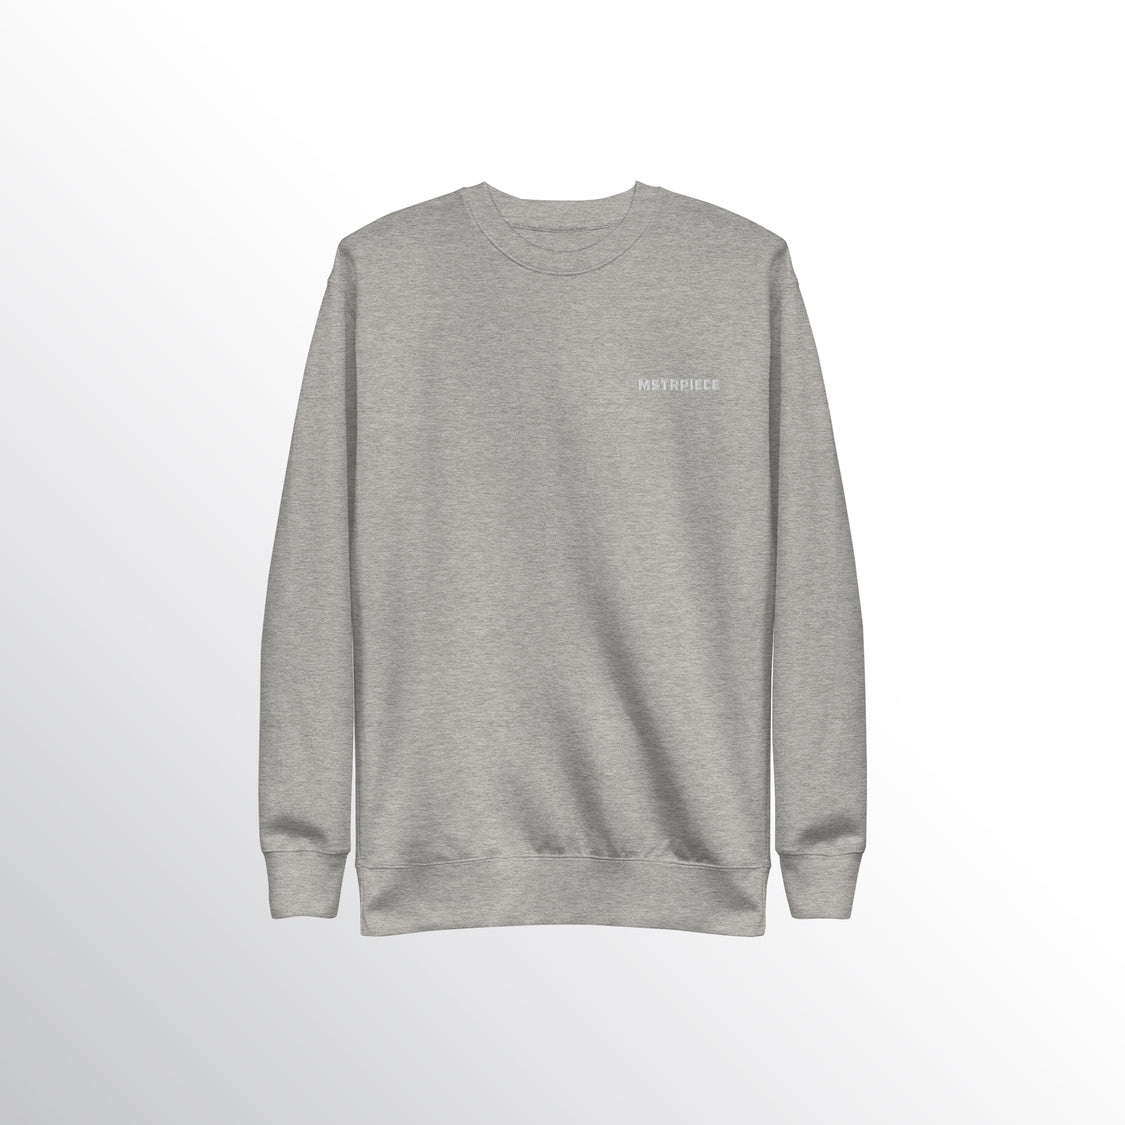 MSTR Premium Cotton Sweatshirt